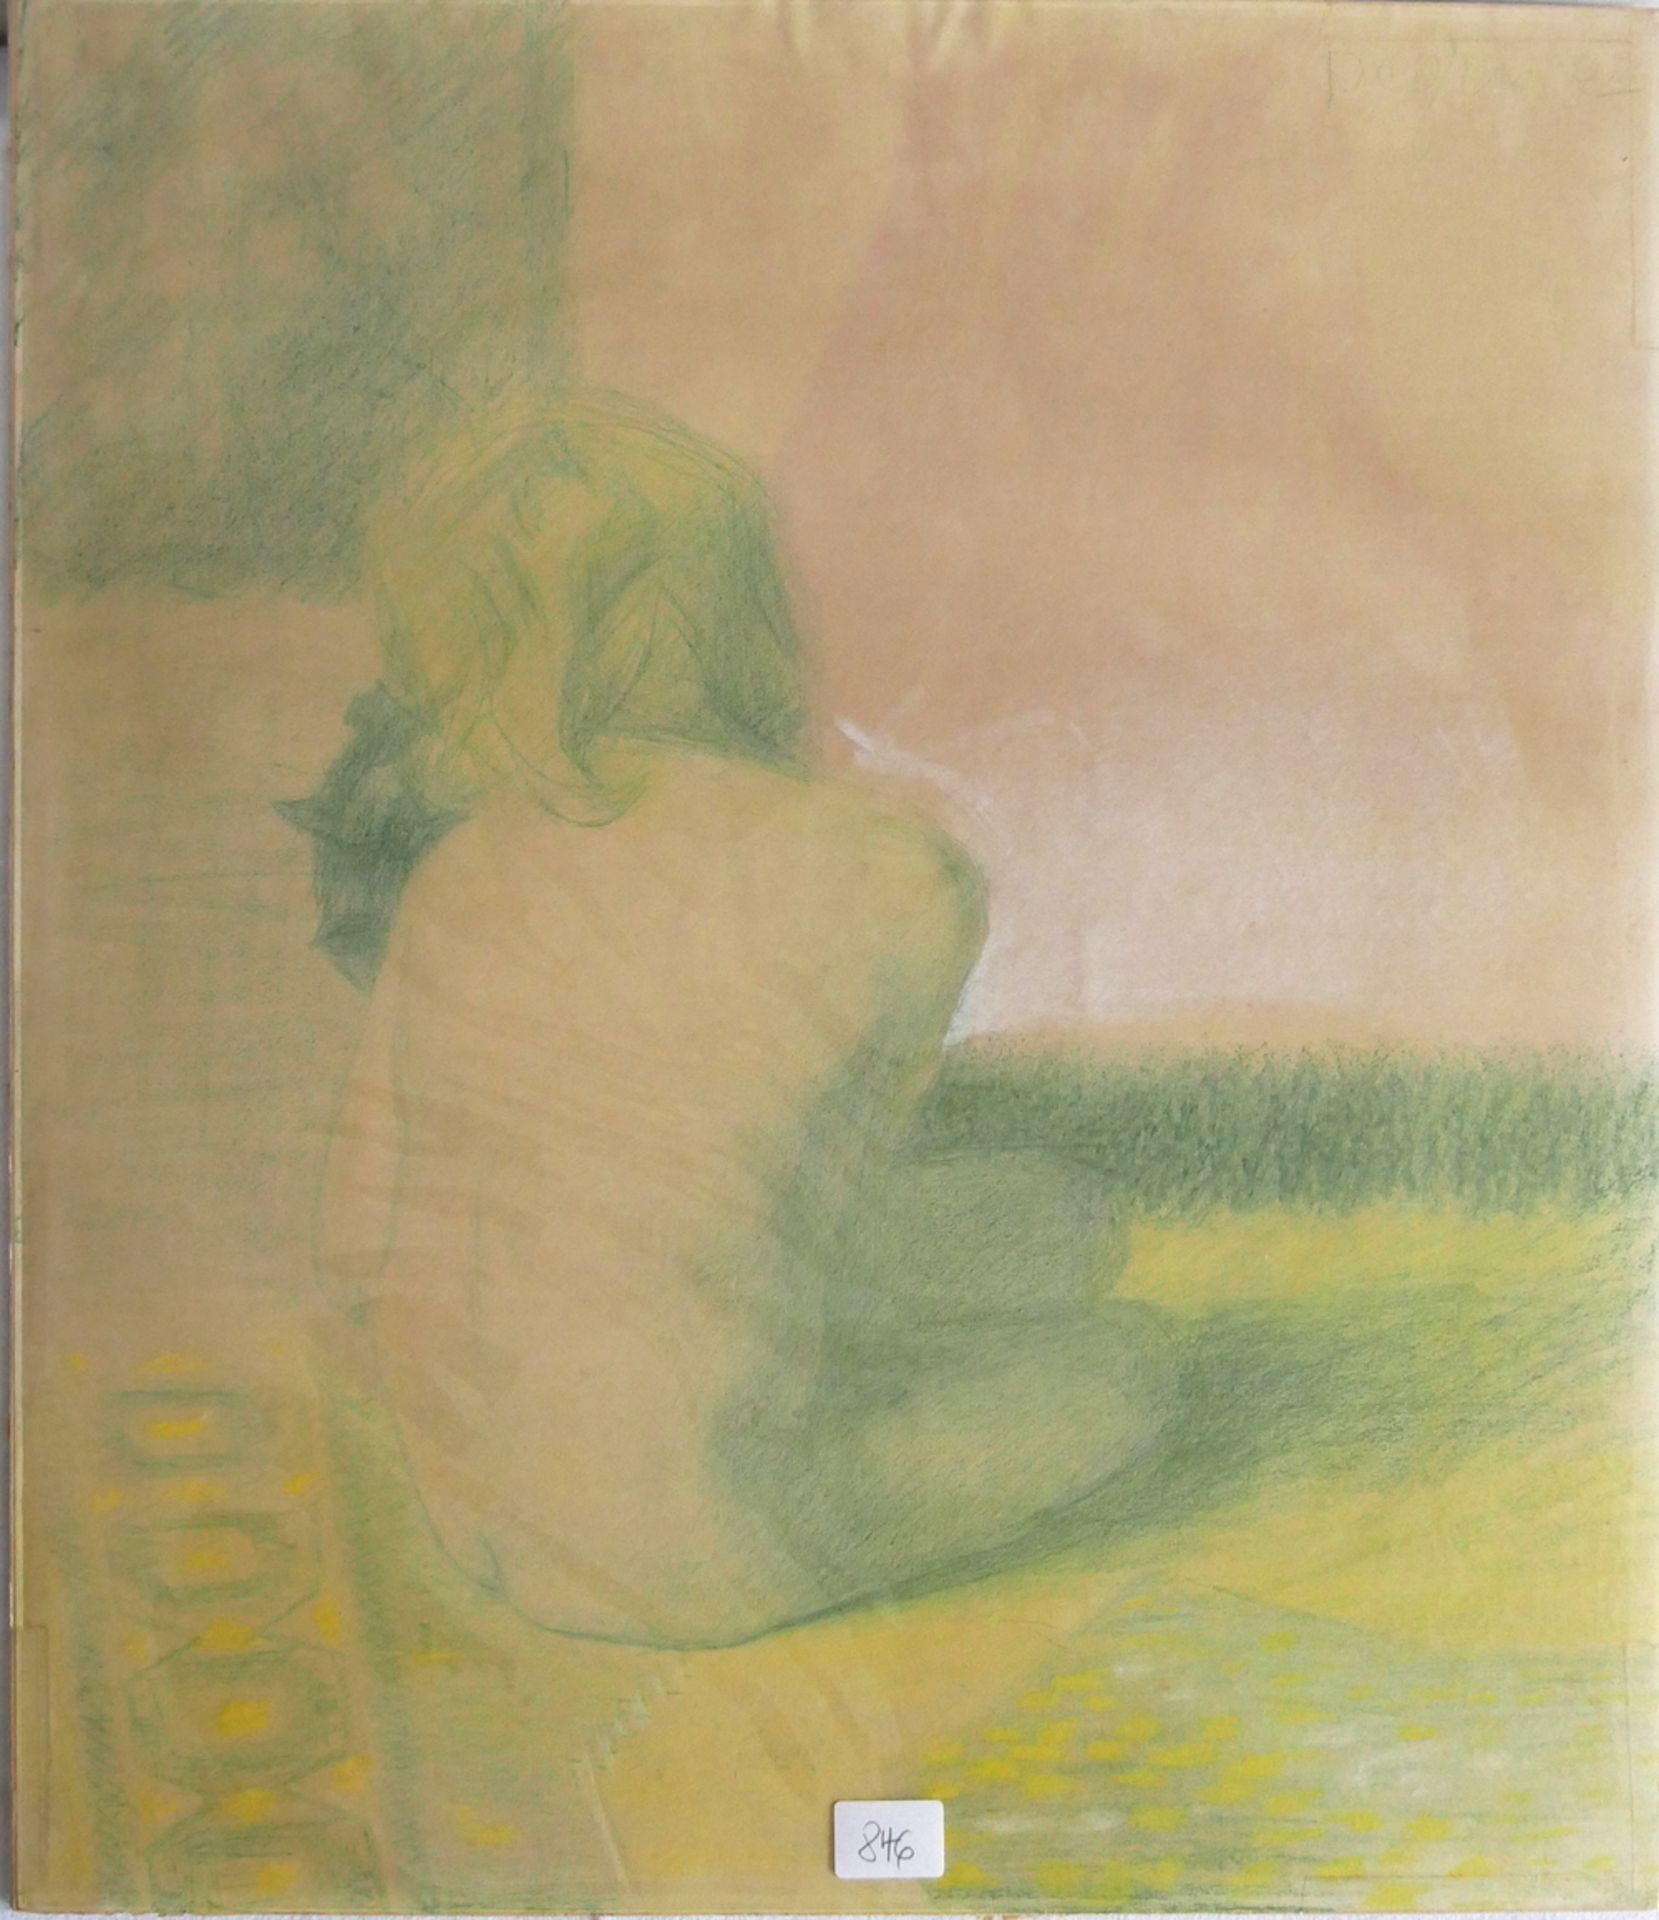 Kreidezeichnung "Rückansicht" in grün und gelb gehalten auf Malkarton. Blattmaße: Höhe ca. 48 cm,